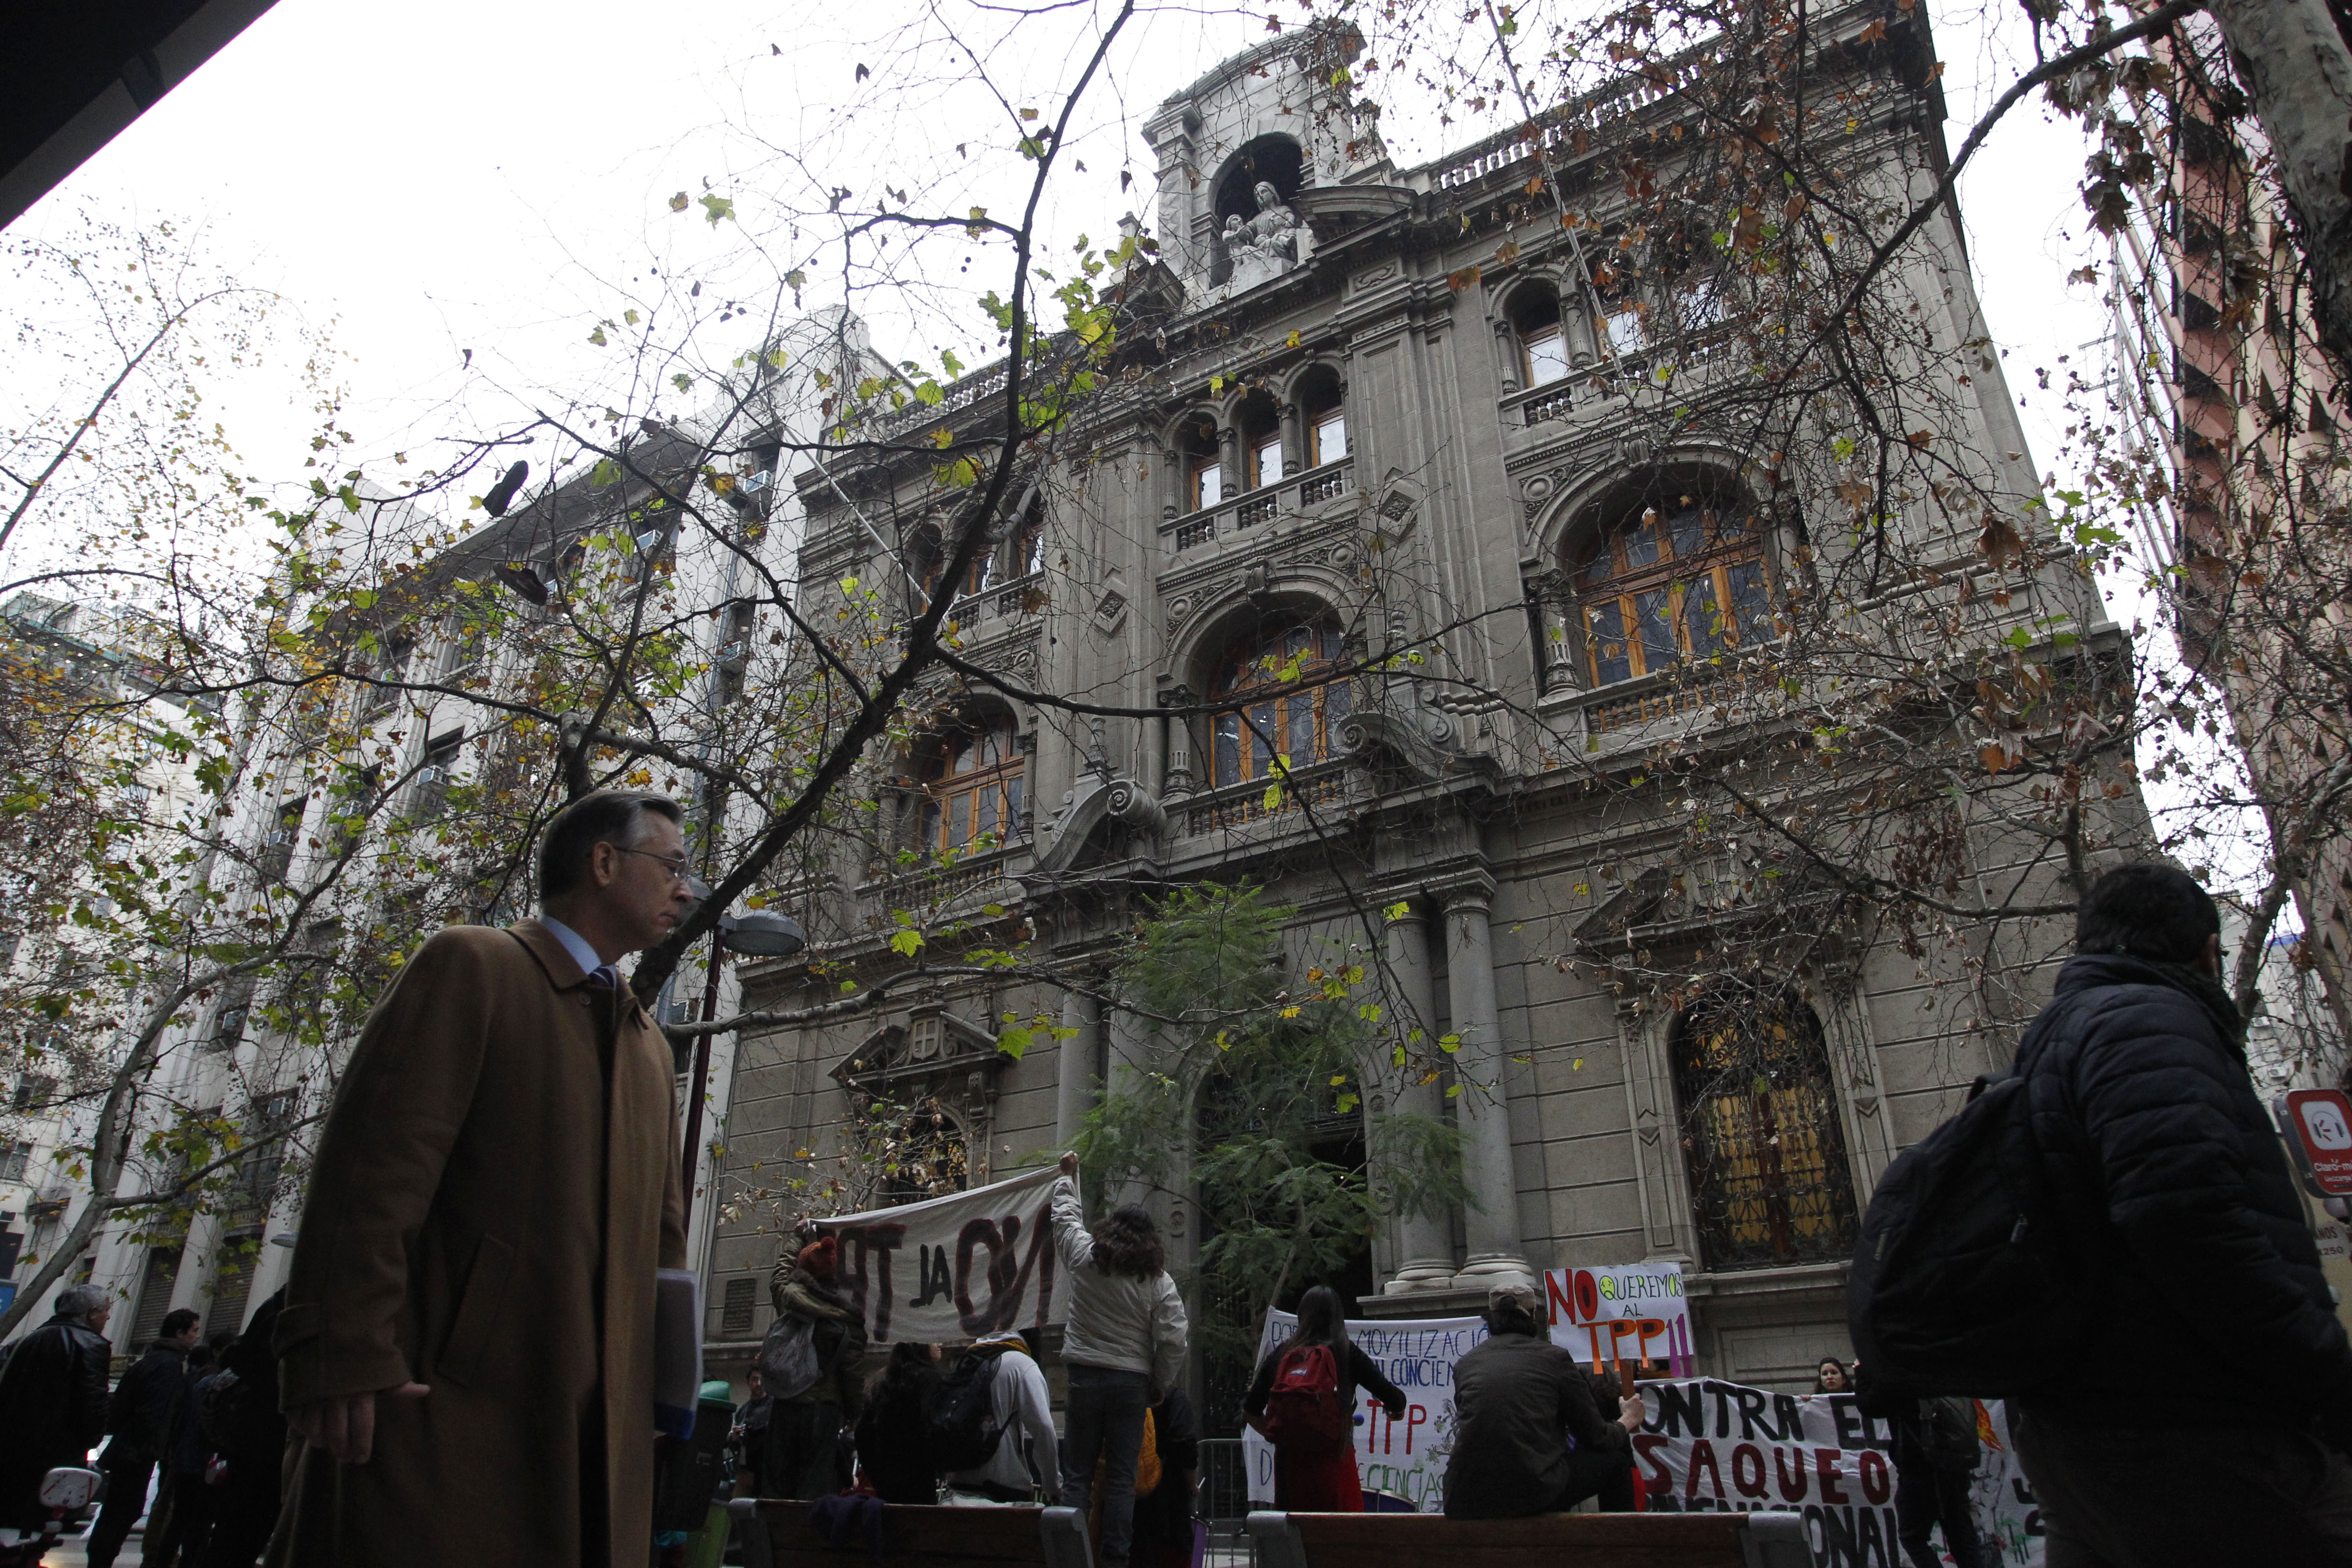 Santiago, 27 de junio 2019
Manifestantes cotra el TPP 11 se manifiestan en el frontis del Tribunal Constitucional

Dragomir Yankovic/Aton Chile